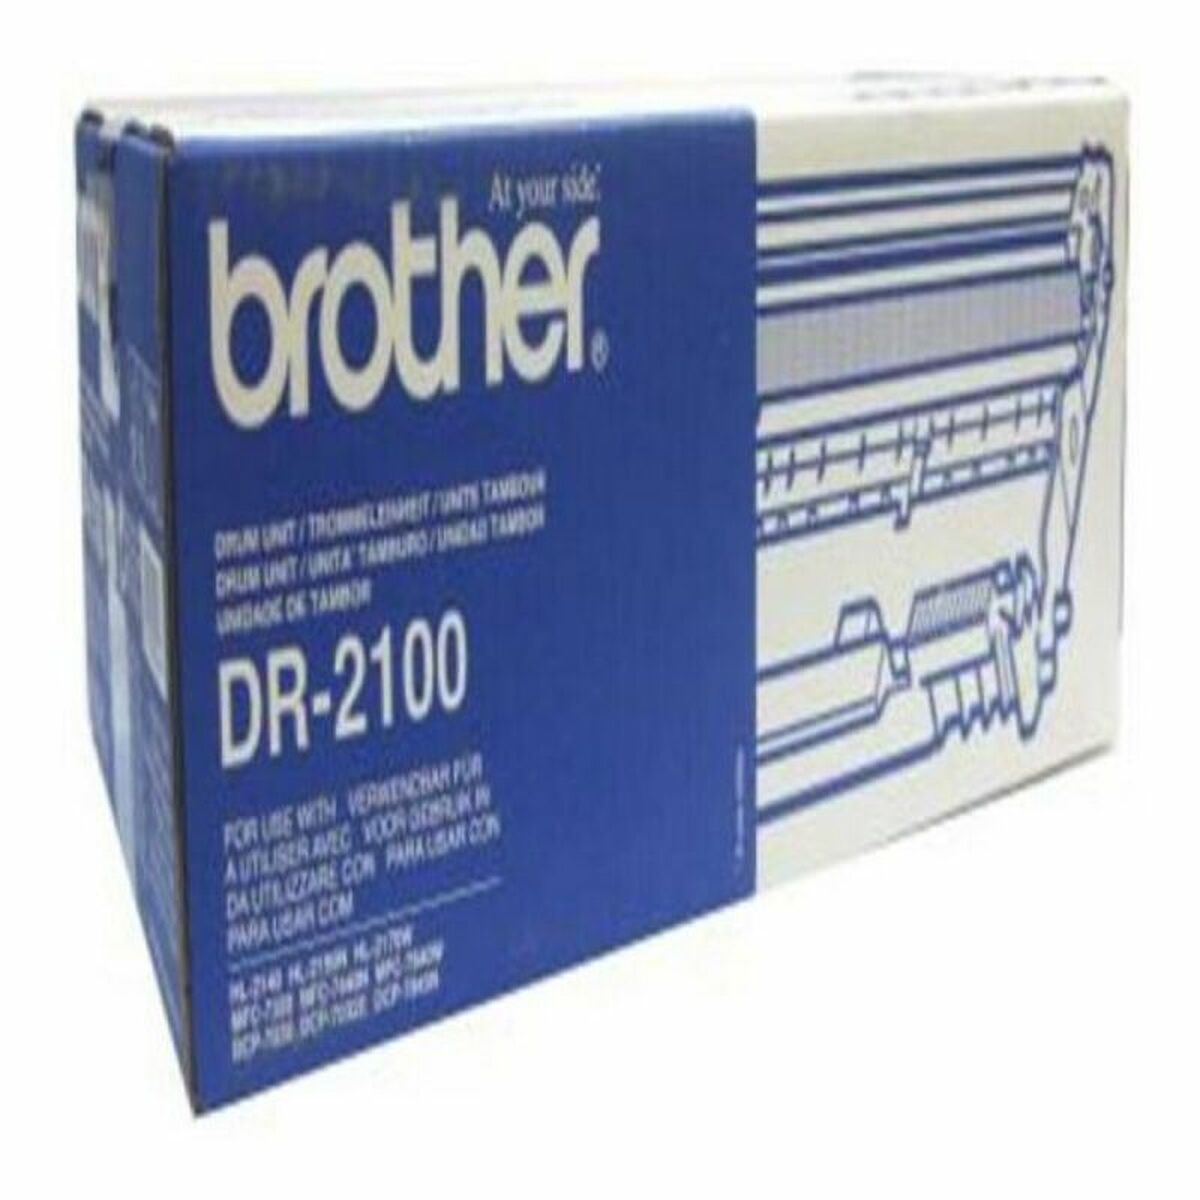 (DR-2100) Trommel DR-2100 BROTHER schwarz